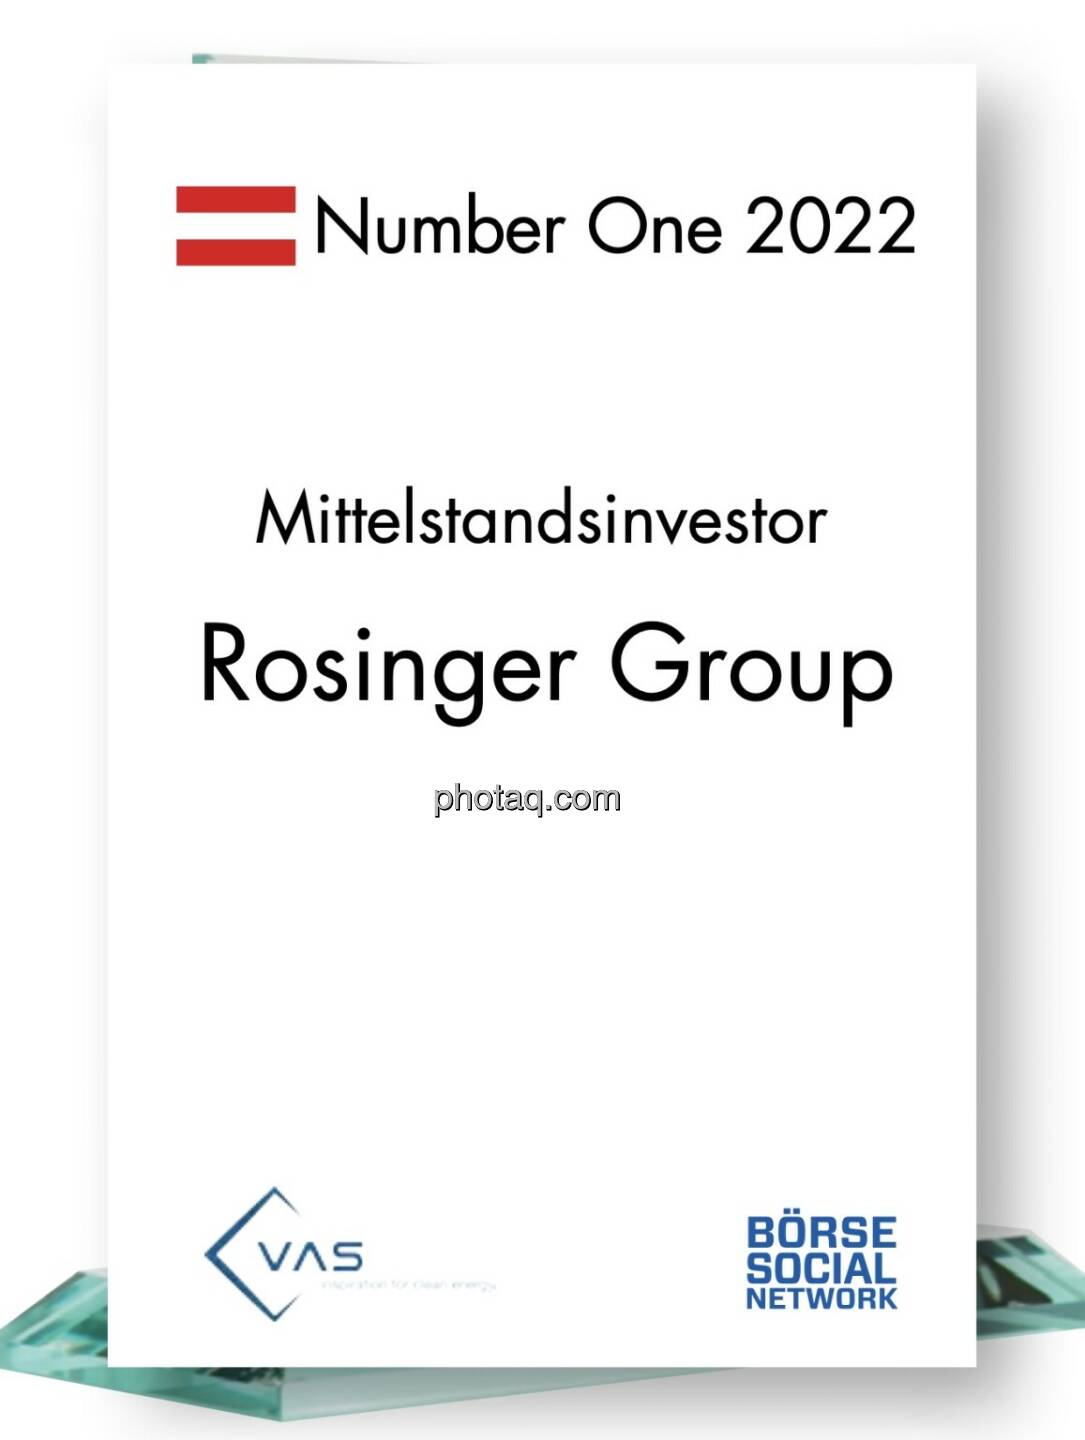 Number One Mittelstandsinvestor: Rosinger Group